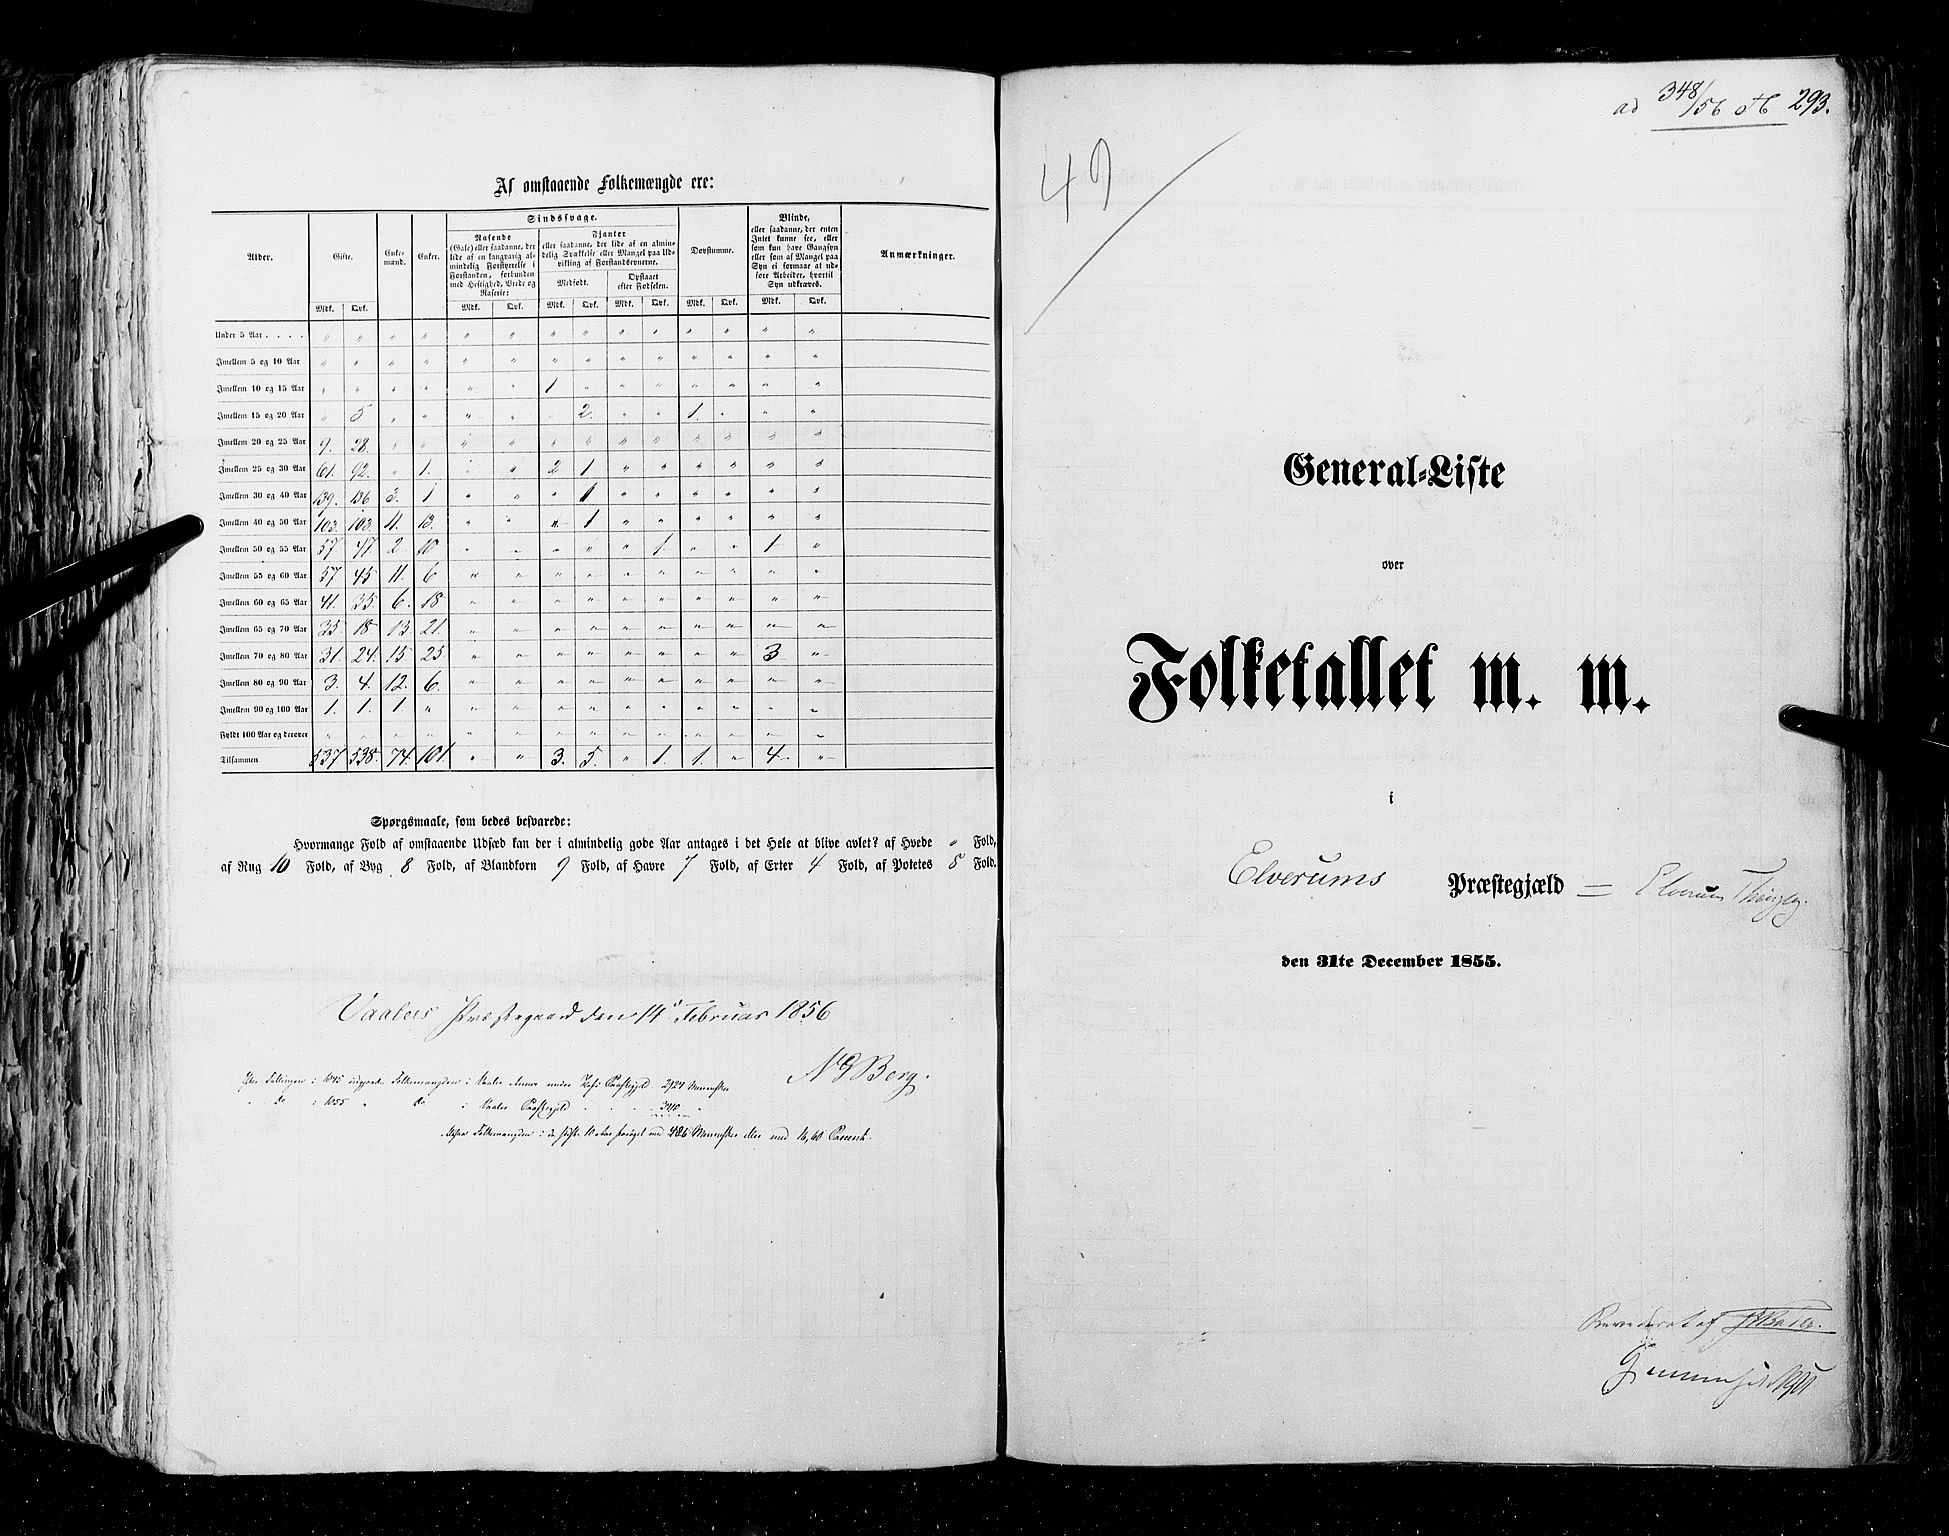 RA, Census 1855, vol. 1: Akershus amt, Smålenenes amt og Hedemarken amt, 1855, p. 293